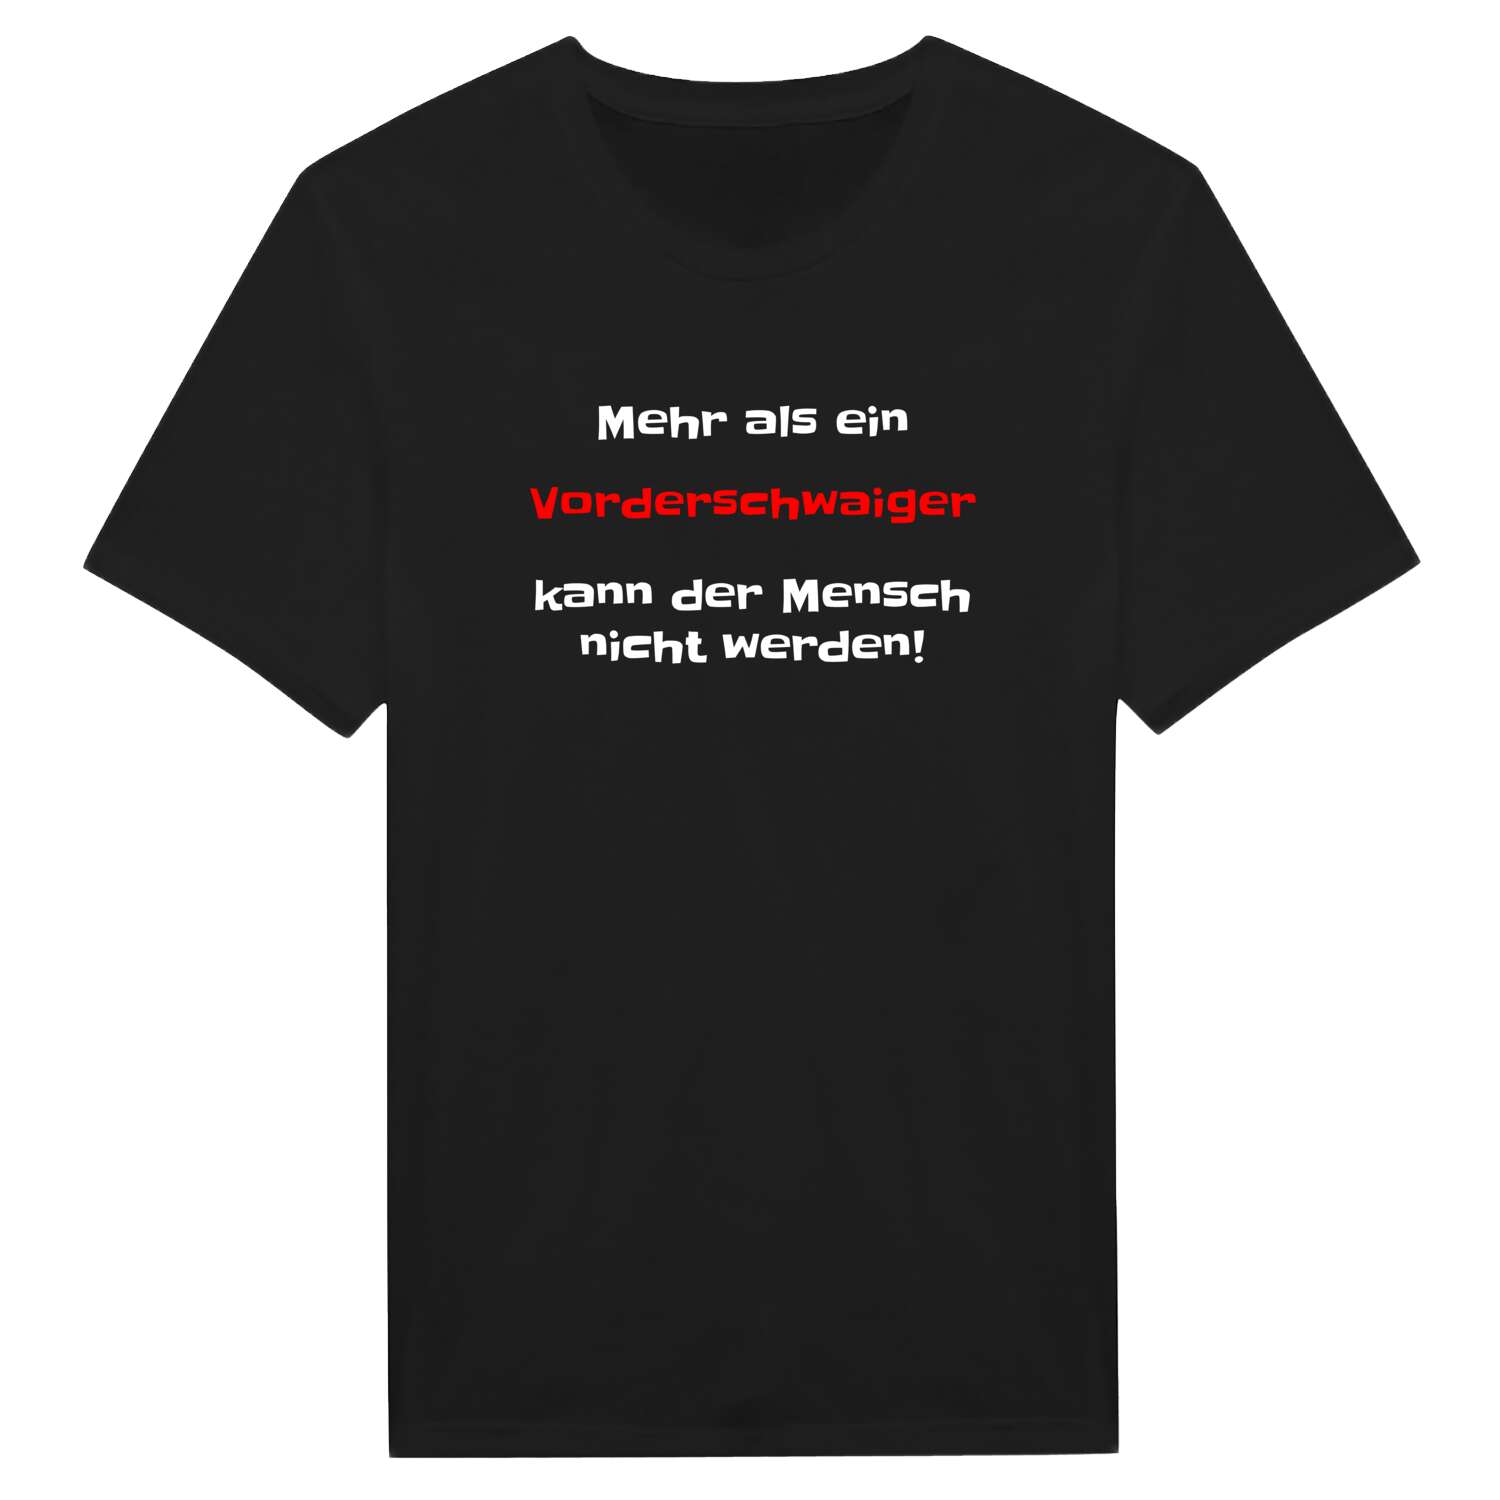 Vorderschwaig T-Shirt »Mehr als ein«